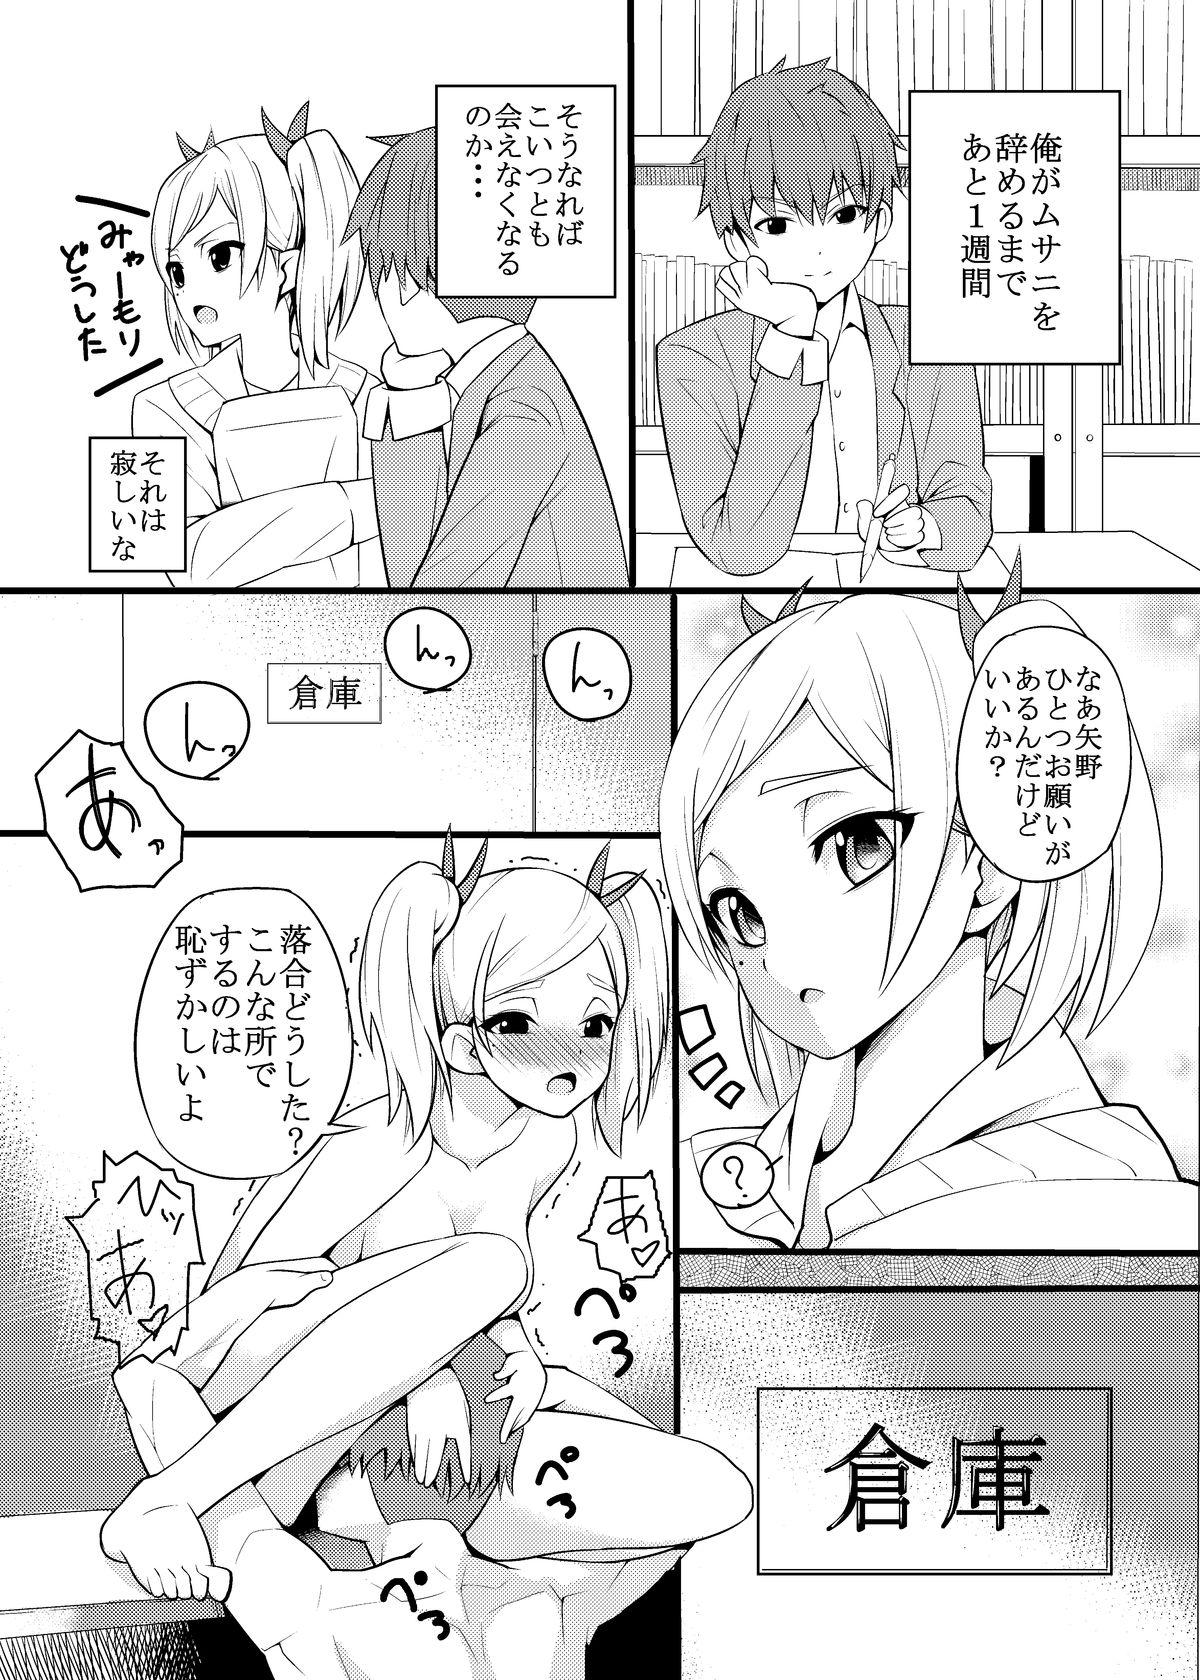 Clothed Sex Yano Senpai no H na Manga - Shirobako Banho - Page 2